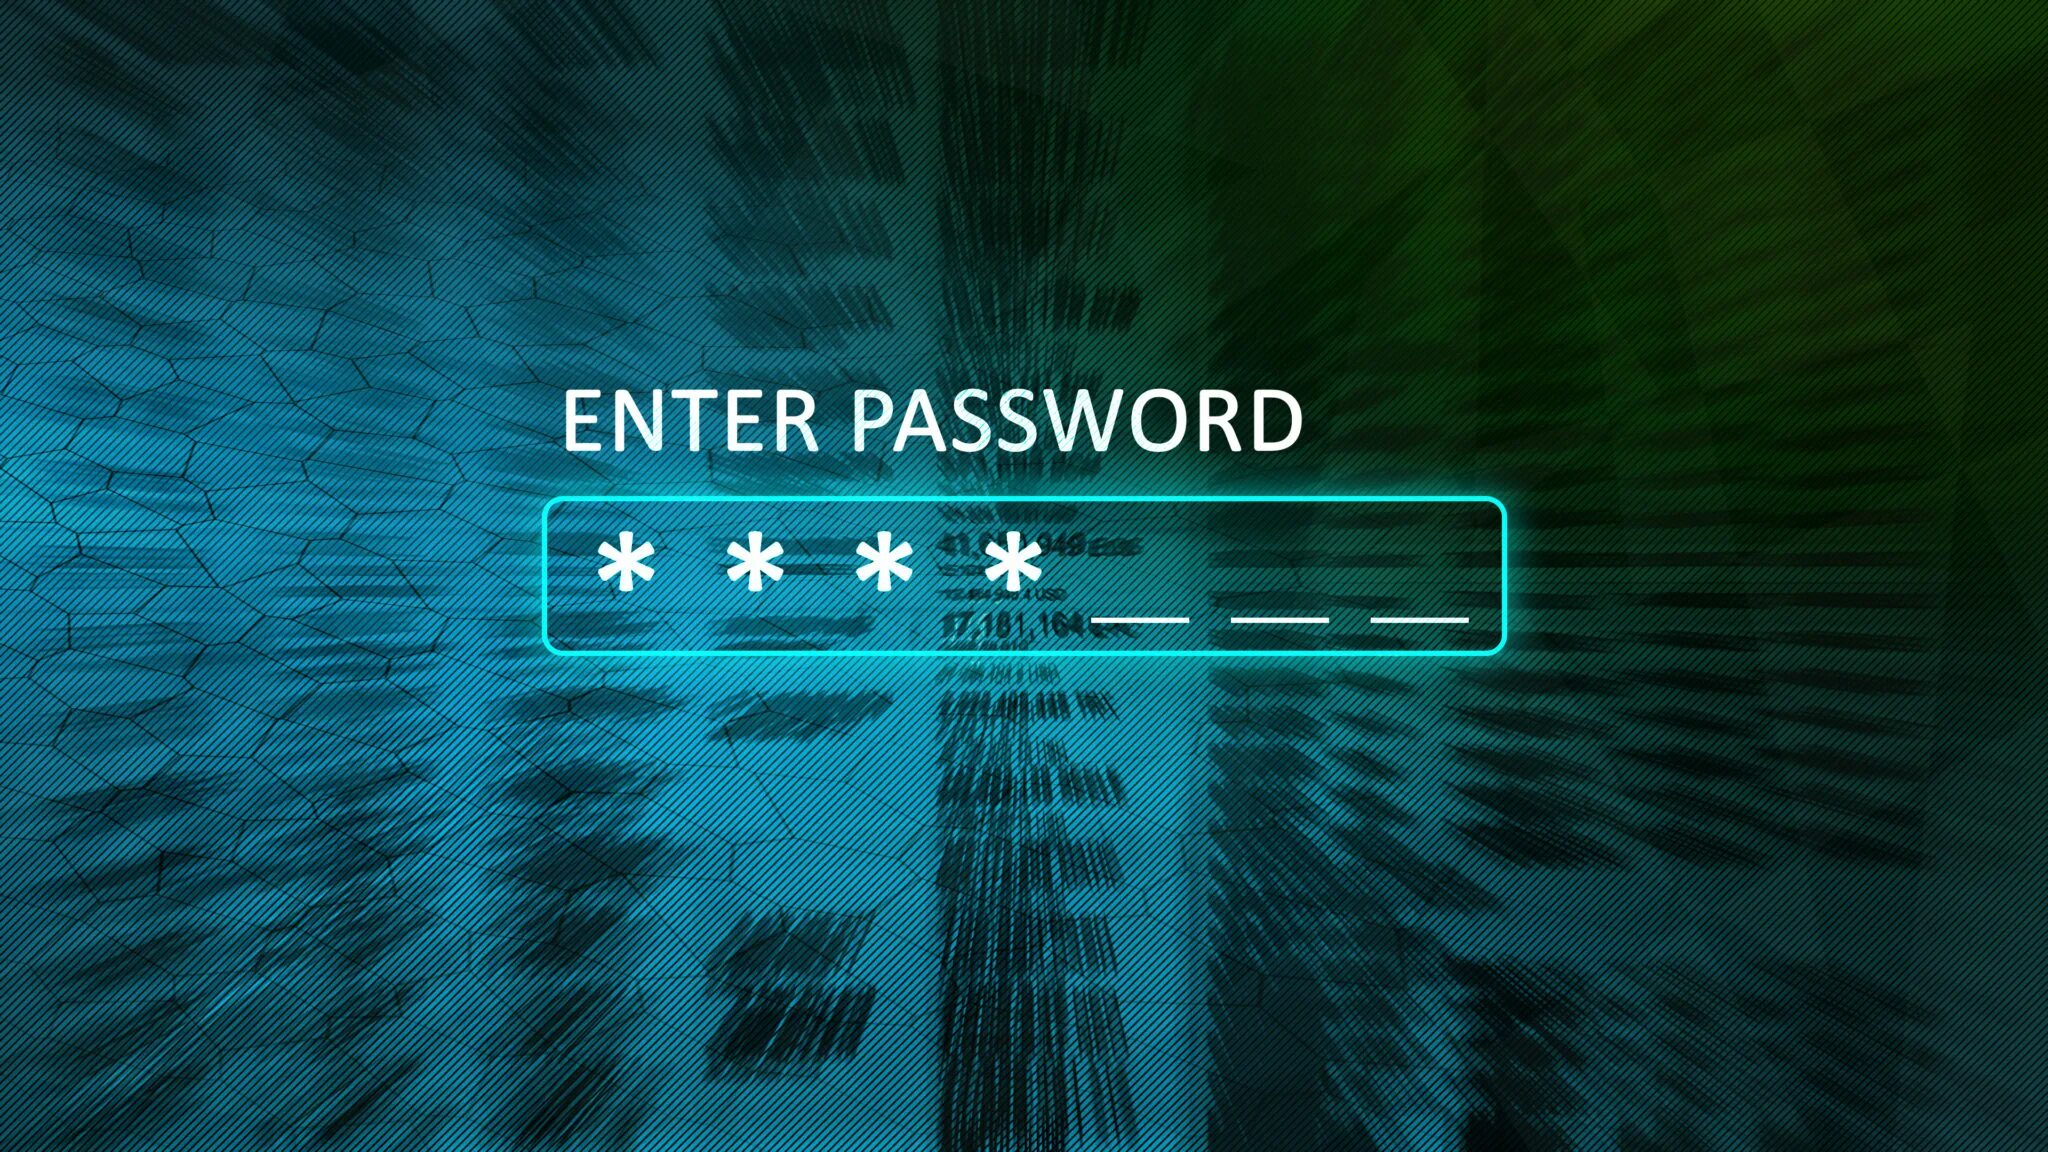 Enter password. Пароль фото. Enter password обои. System password enter password.